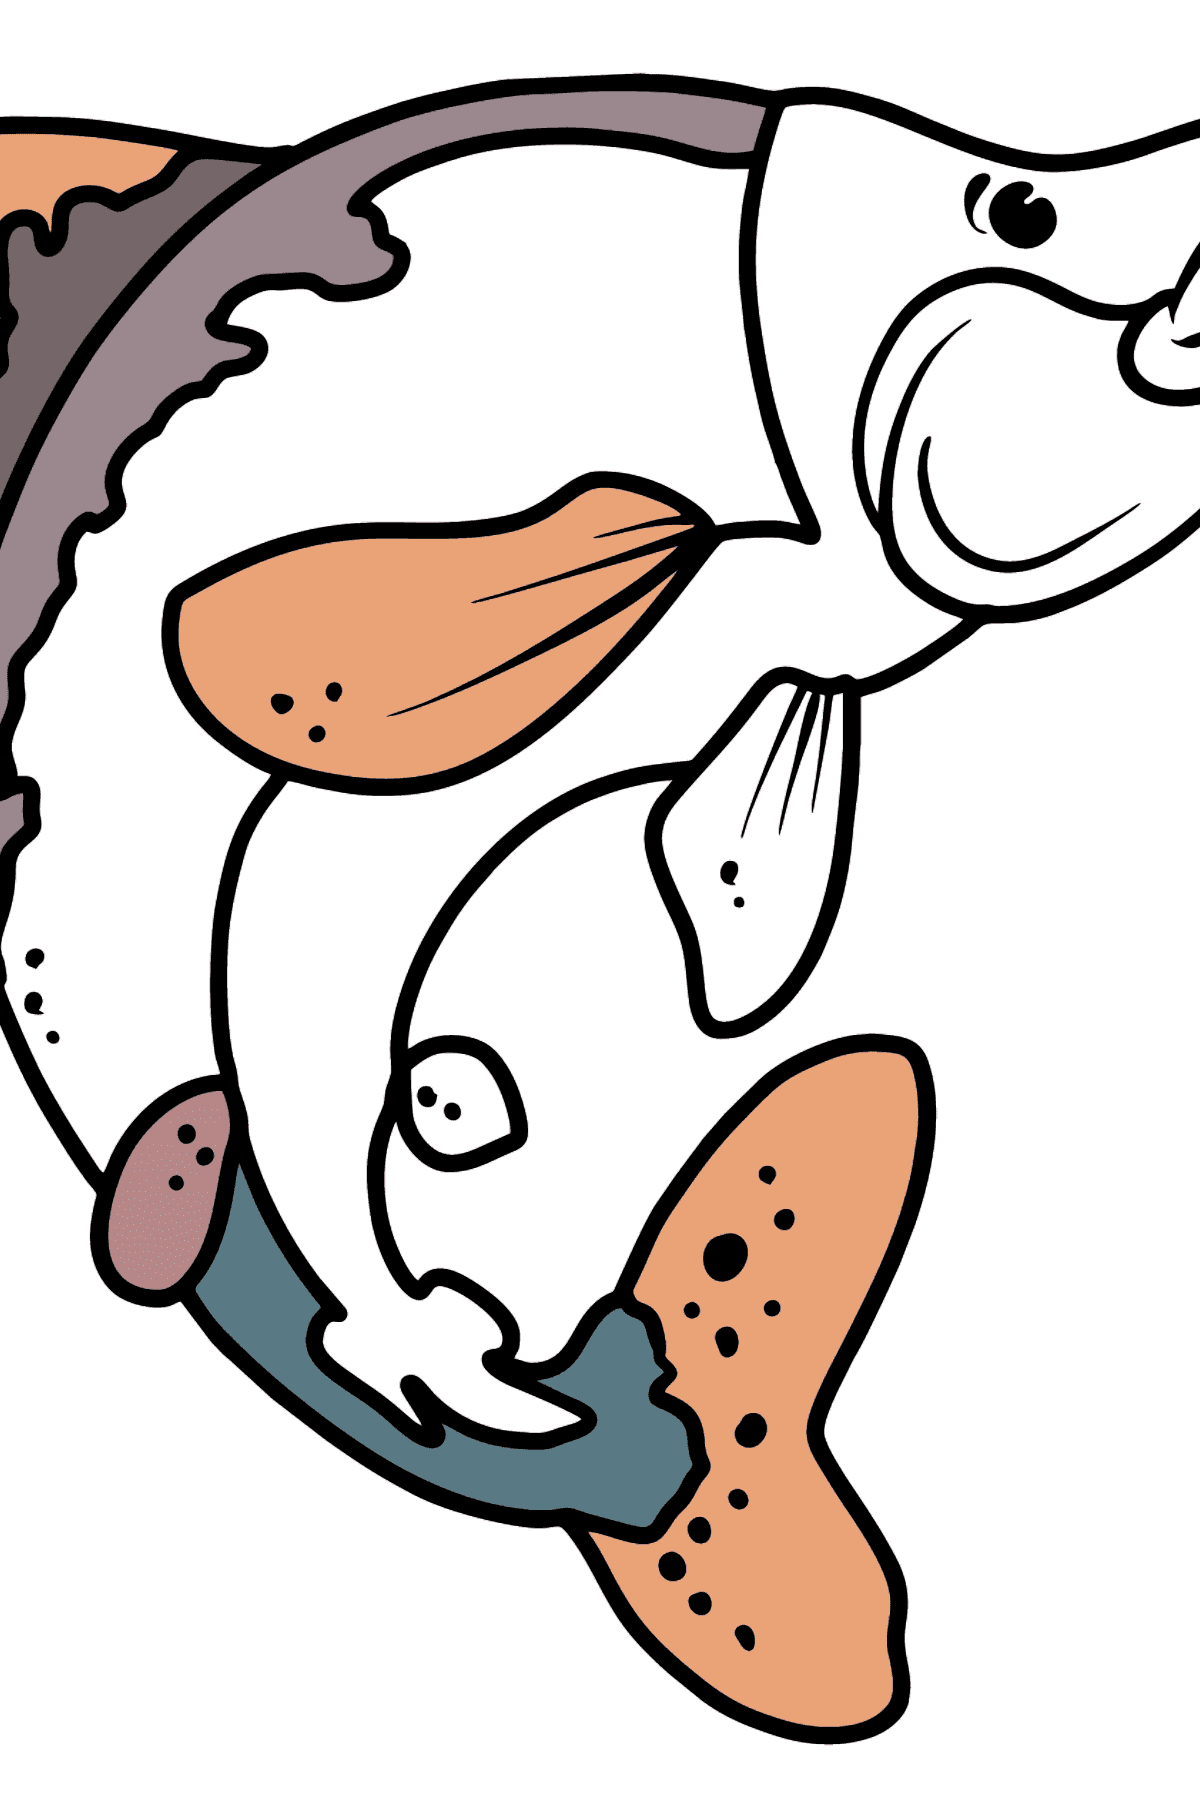 Desenho para colorir de salmão - Imagens para Colorir para Crianças